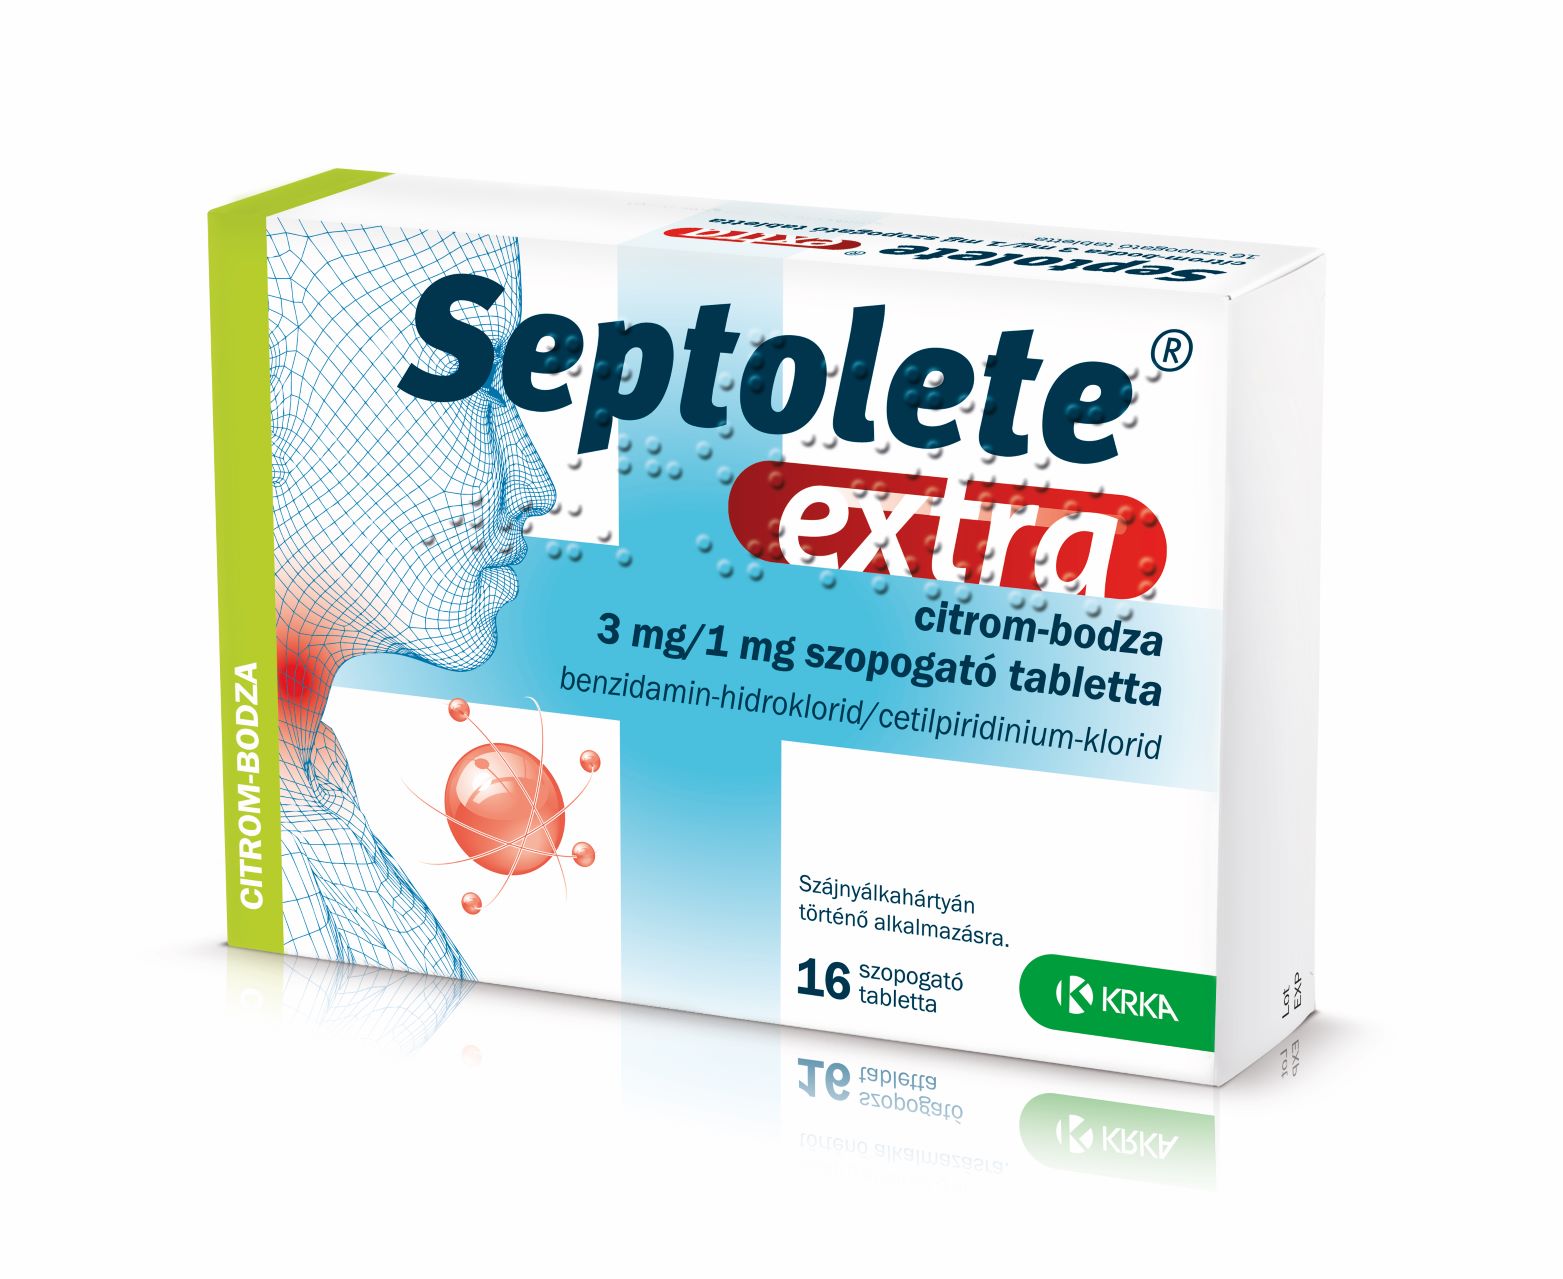 Septolete Extra citrom-bodza 3mg/1mg szopogatós tabletta